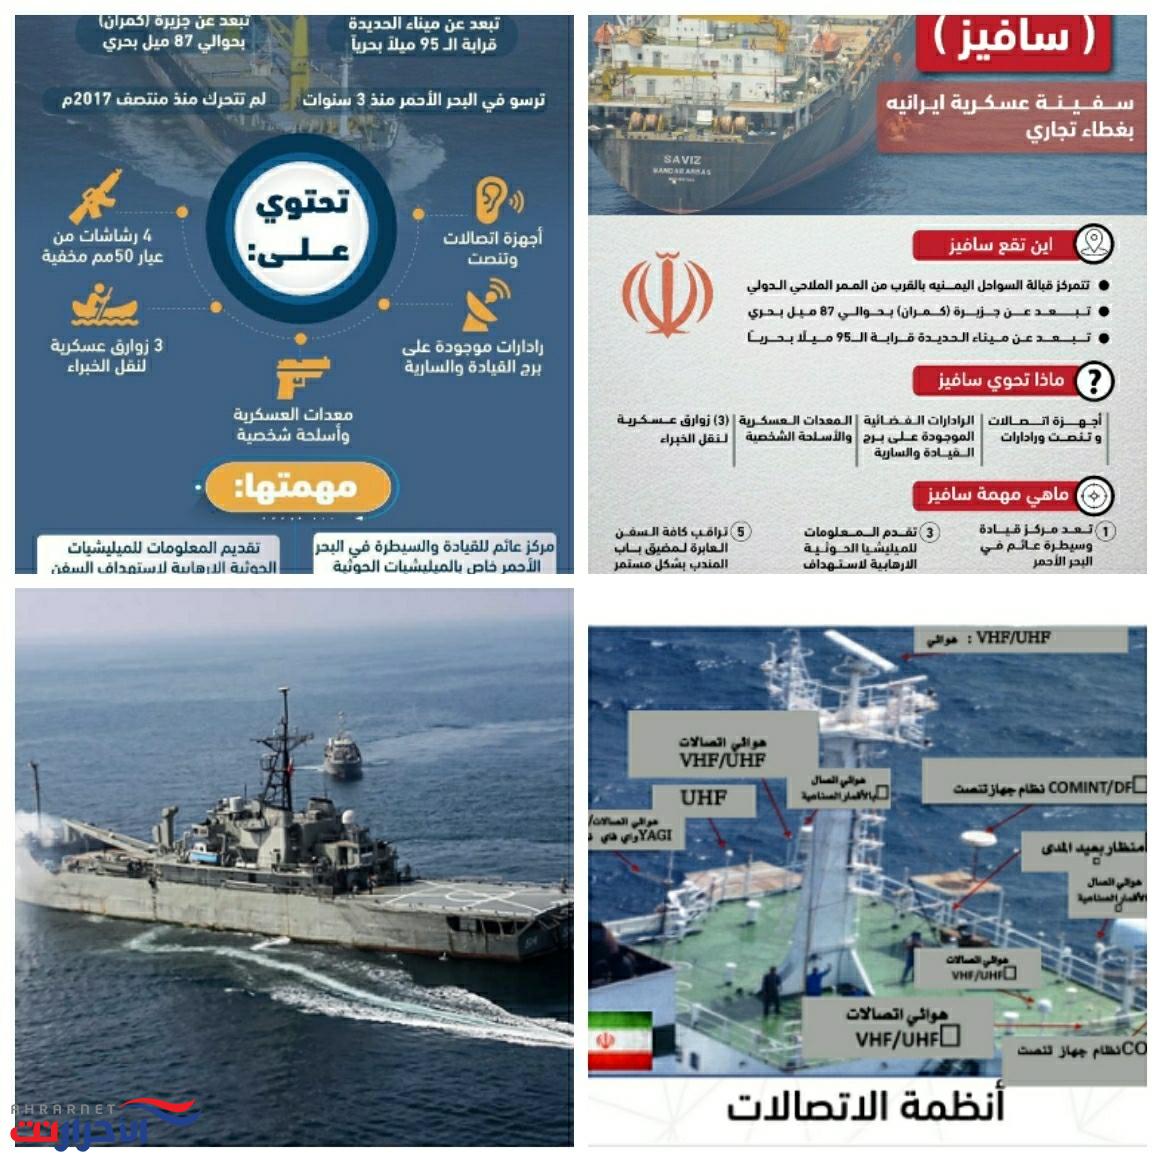 صحيفة أمريكية تكشف تفاصيل الهجوم على سفينة التجسس الإيرانية "سافيز" قبالة سواحلنا الغربية والدولة المارقة تعترف